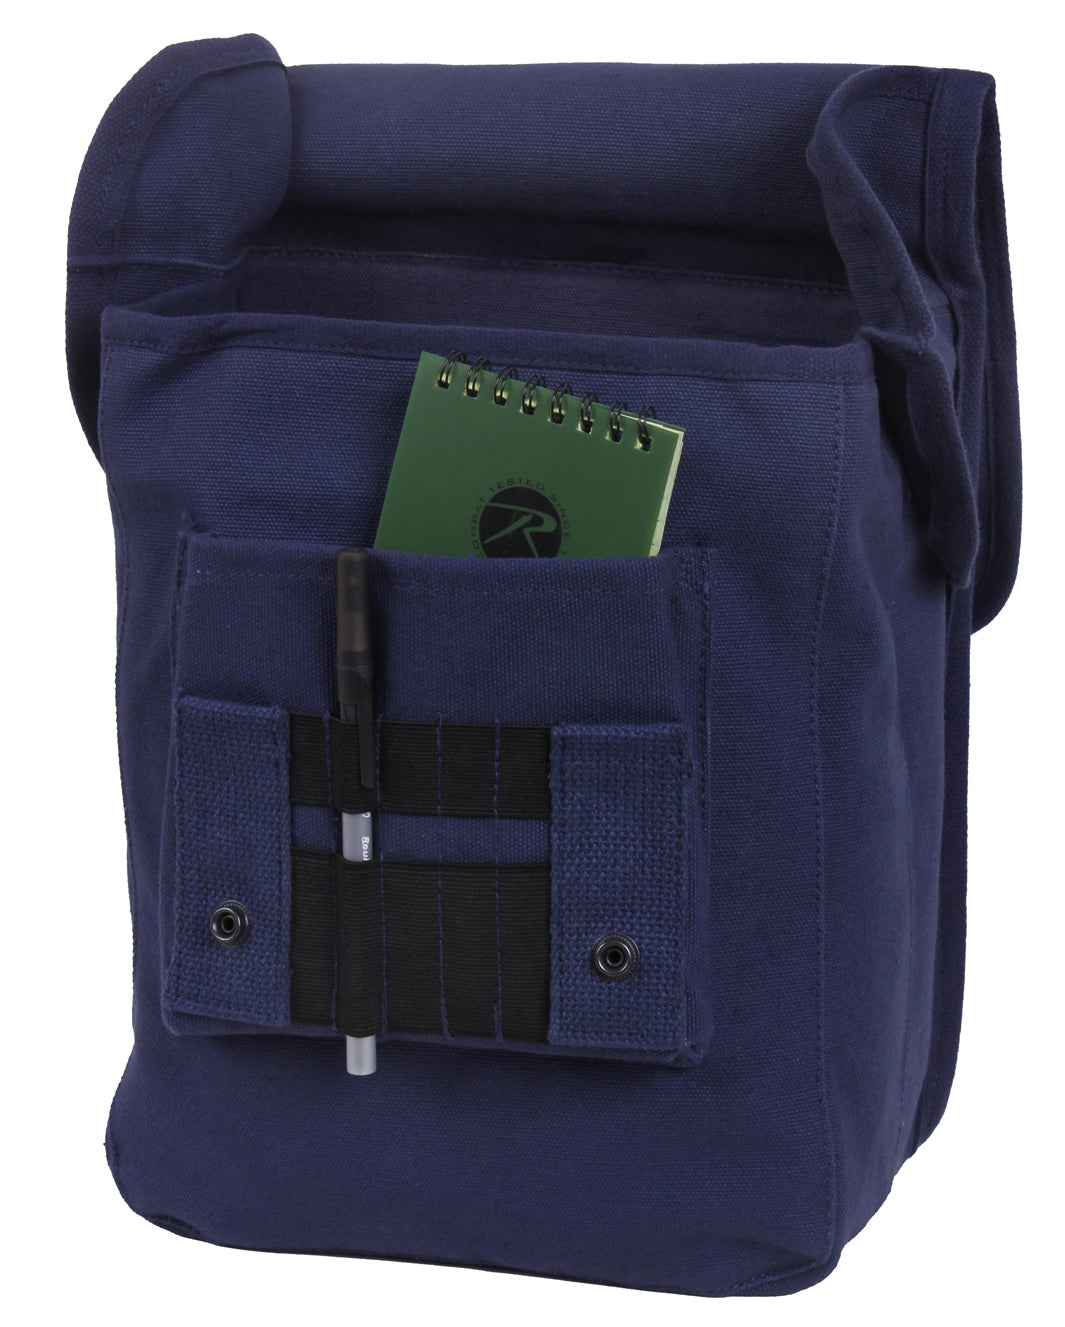 Rothco Canvas Map Case Shoulder Bag - Navy Blue Shoulder Bag, Everyday Carry Bag